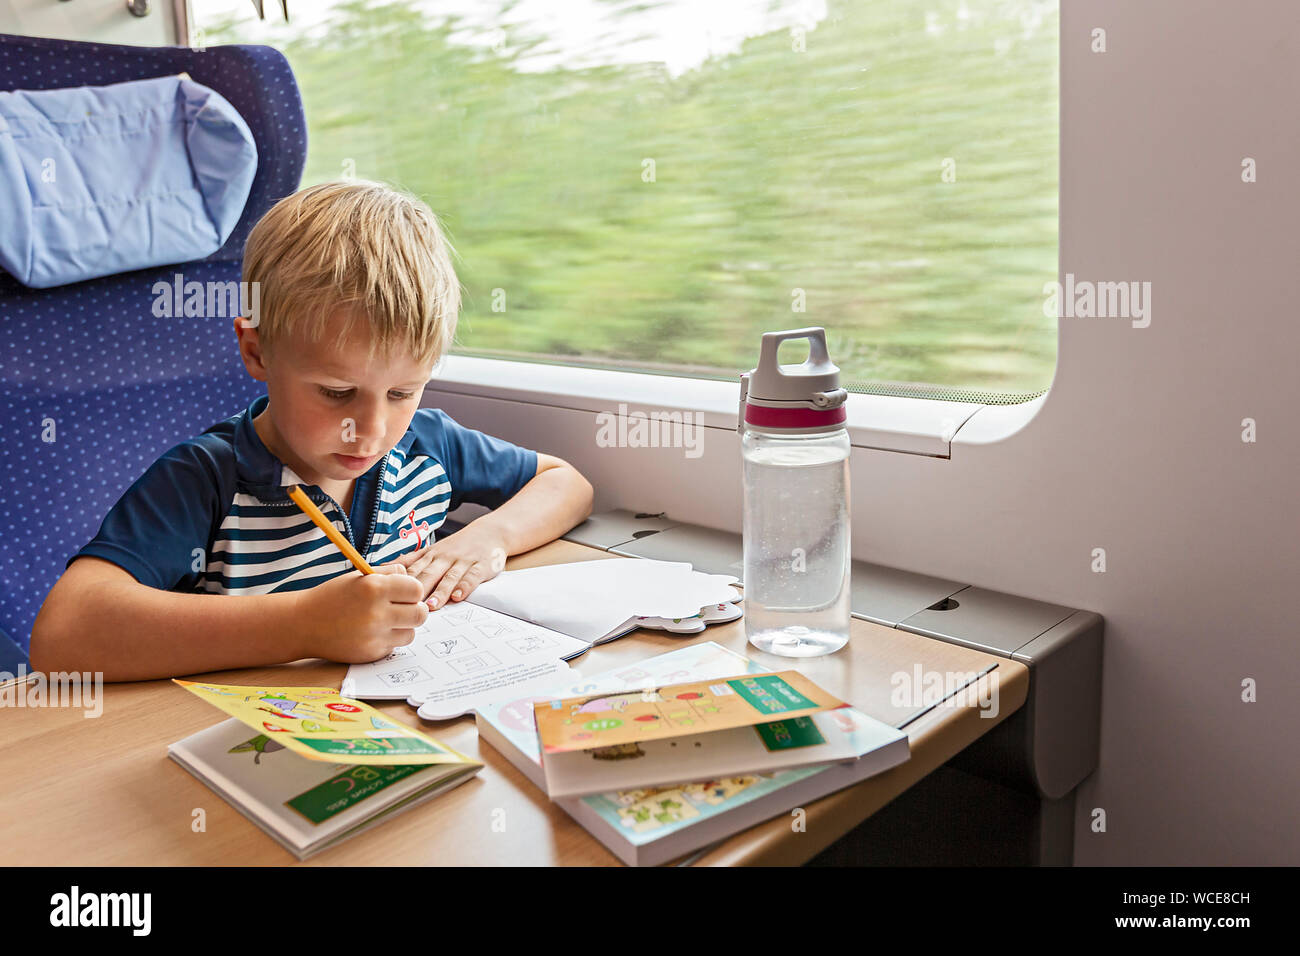 Garçon, 6 ans, au cours de dessin de train, Allemagne, 01.08.2019. Banque D'Images